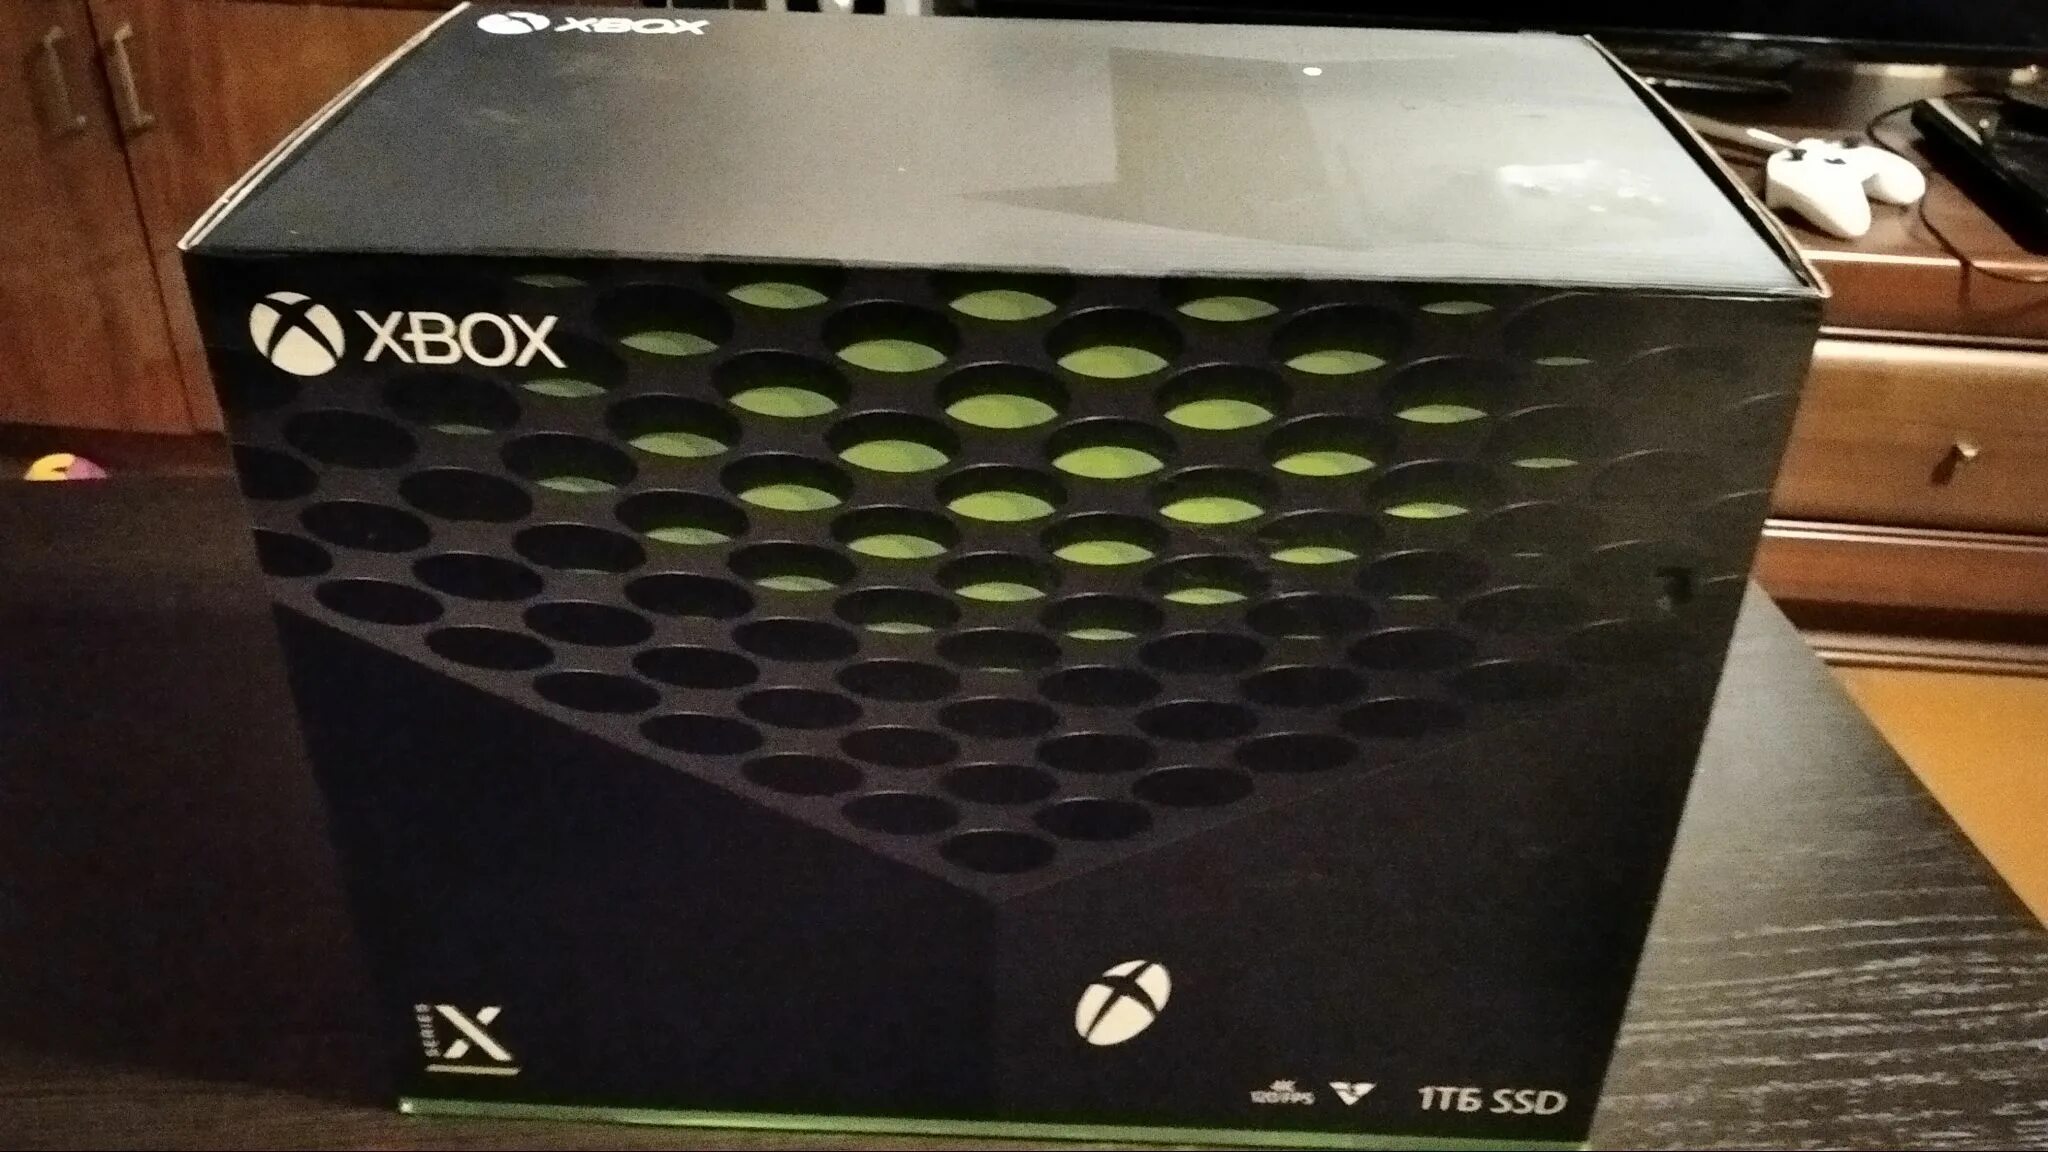 Xbox series x дата выхода в россии. Xbox Series x 1tb. Xbox Microsoft Xbox Series x 1tb. Игровая консоль приставка Xbox Series x 1tb SSD. Игровая приставка Microsoft Xbox Series x 1000 ГБ SSD, черный.